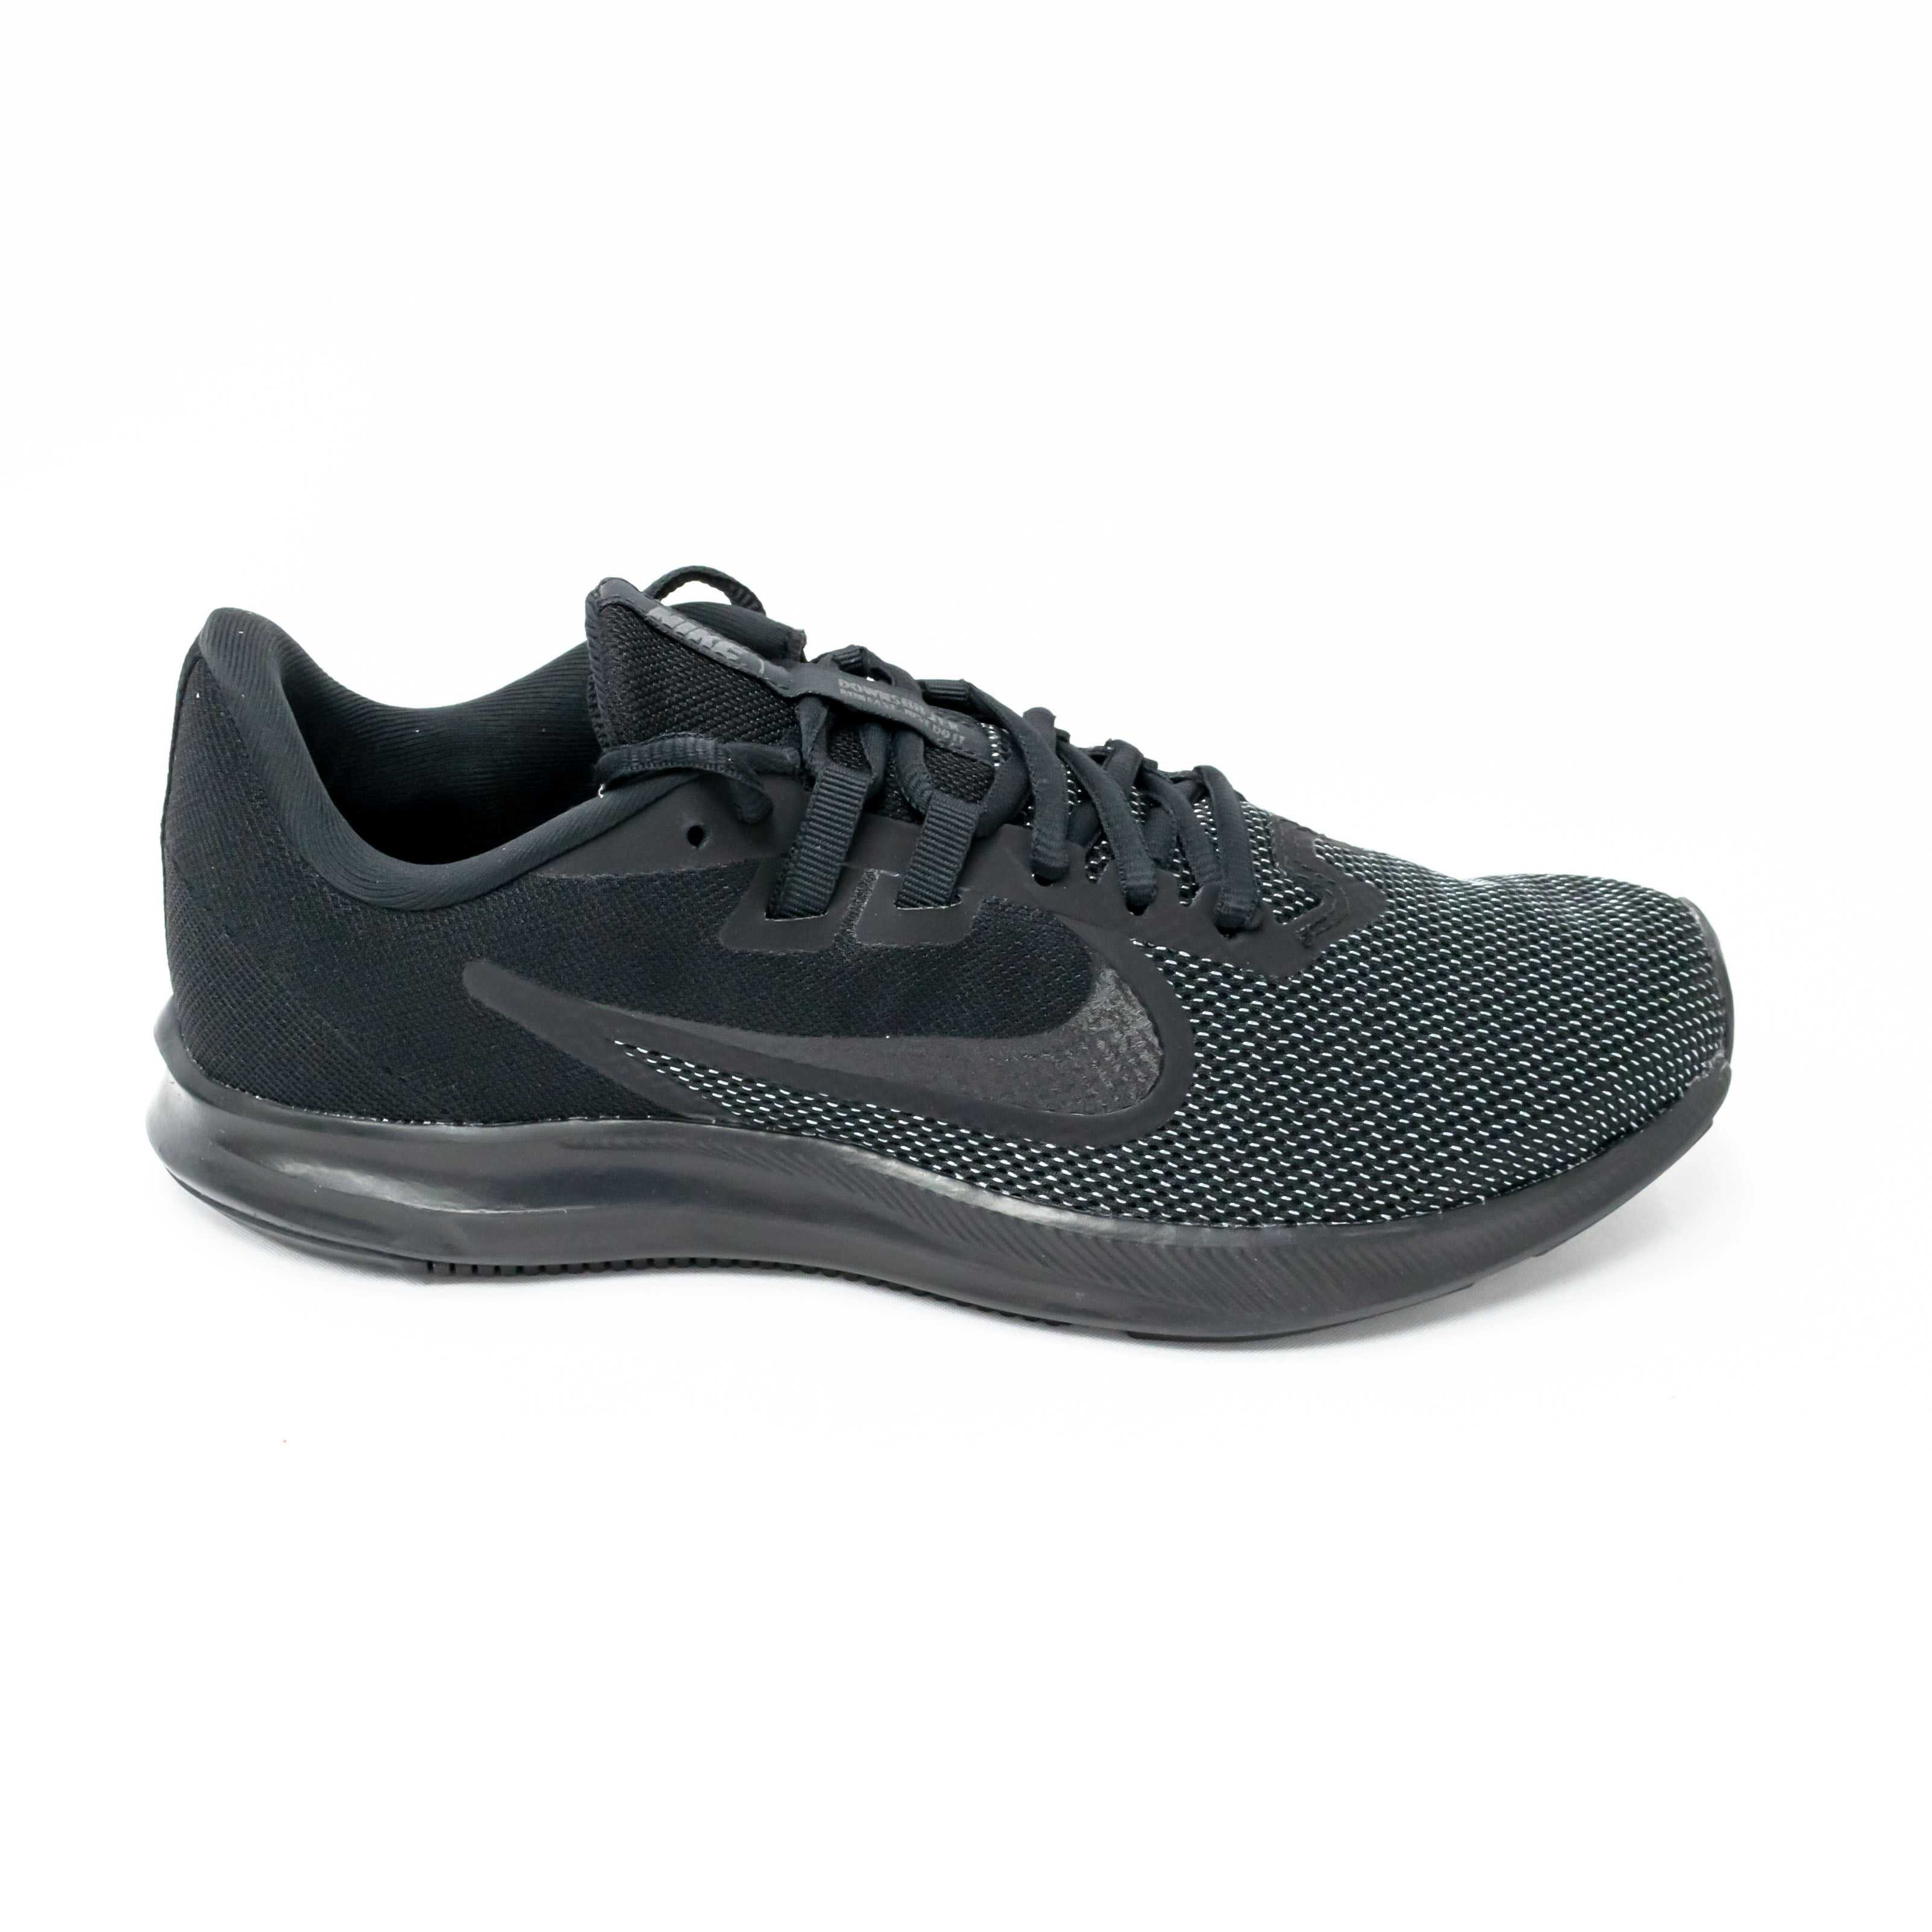 Tênis Nike AQ7481 005 DownShifter 9 All Black